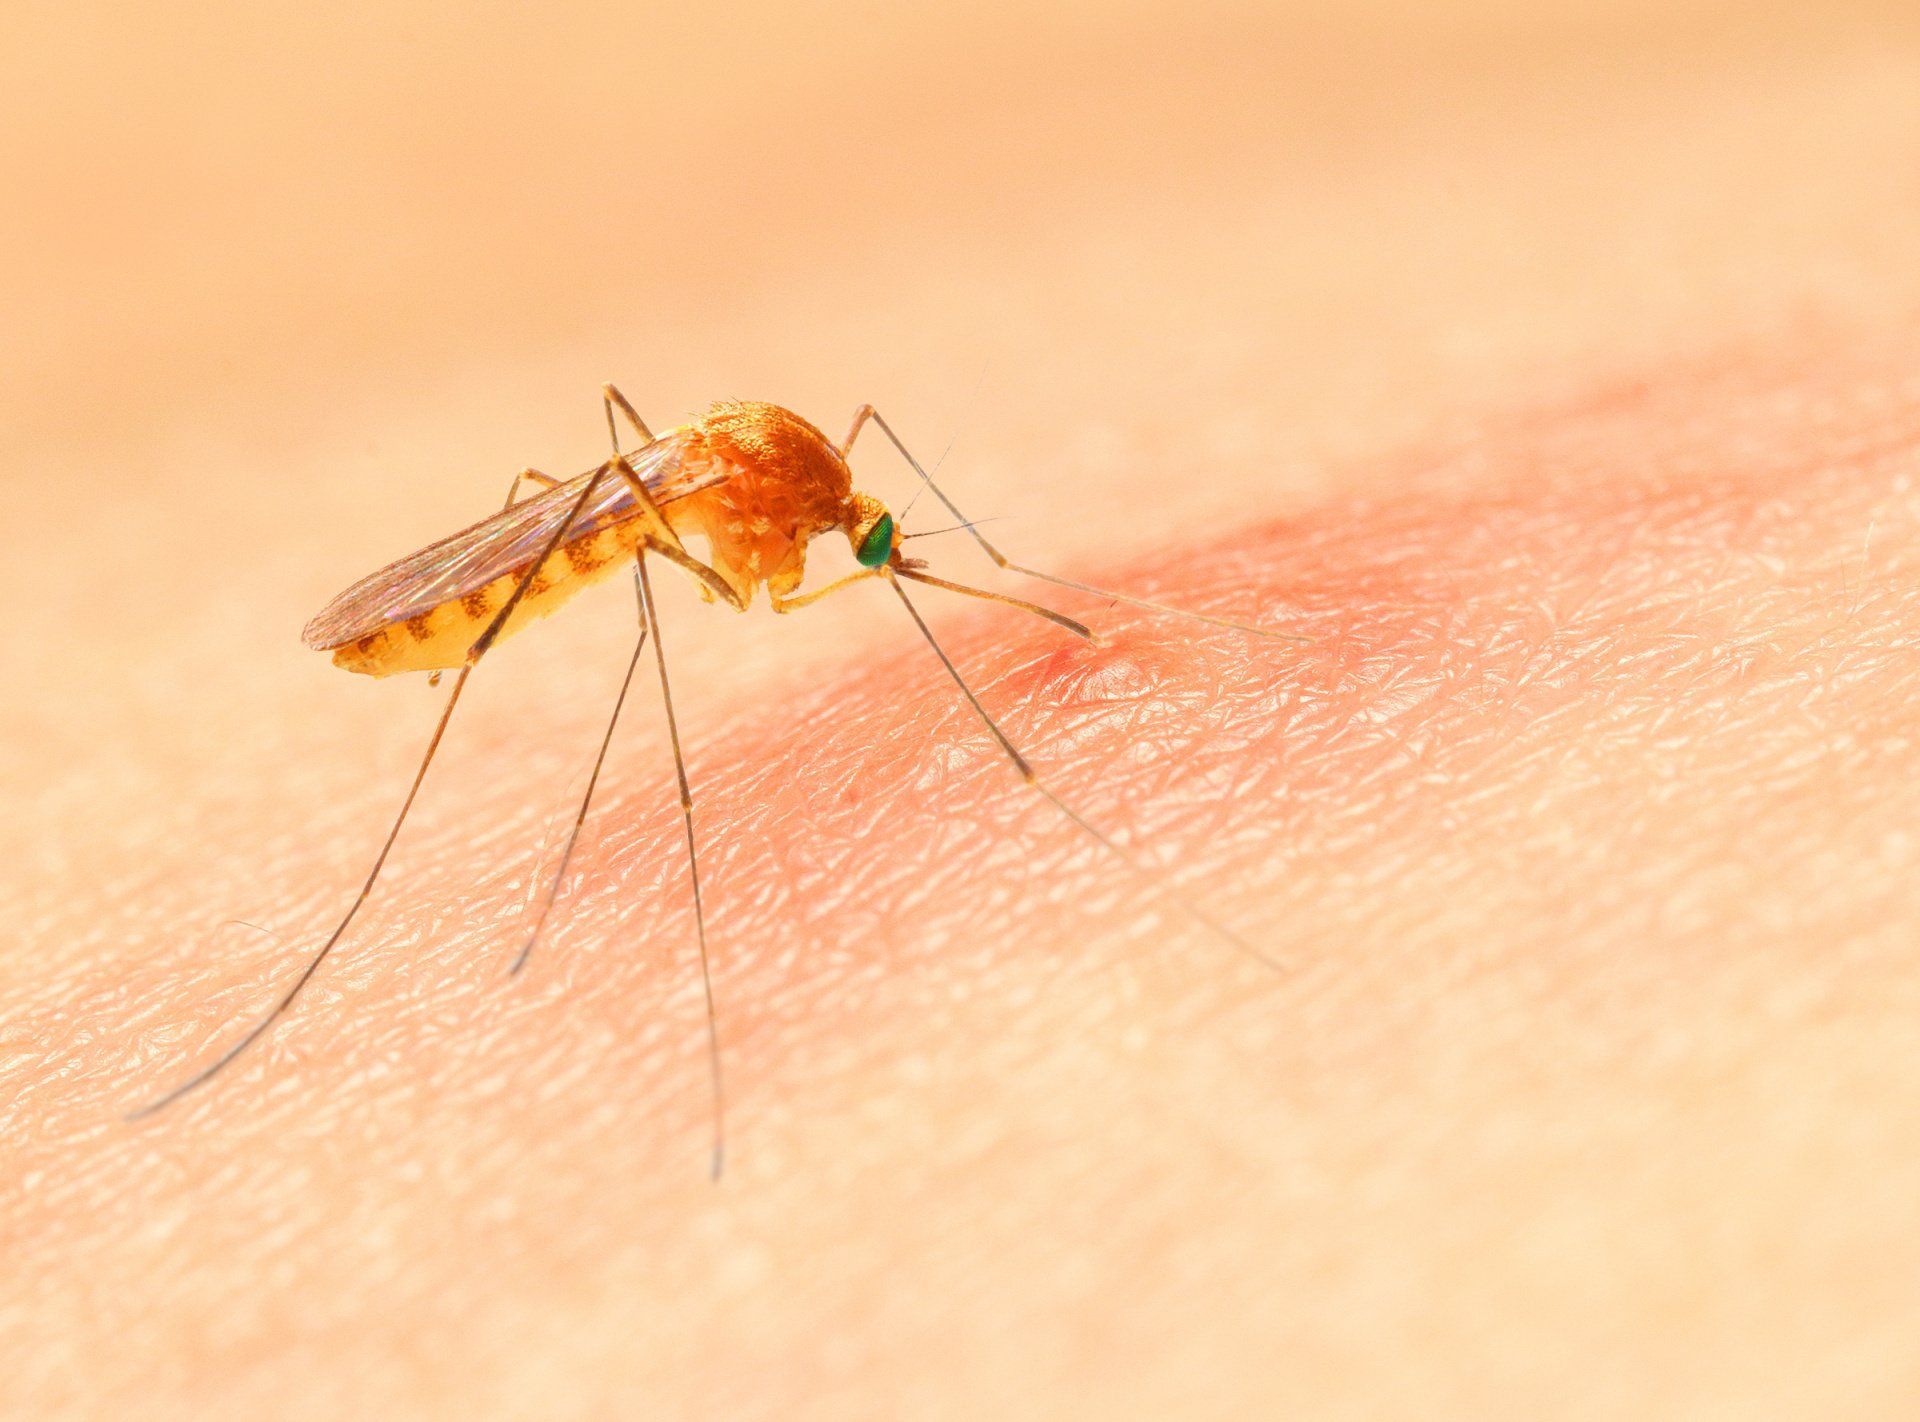 Укус малярии. Укус малярии малярийный комар. Комар желтолихорадочный укус. Укус комара под микроскопом.